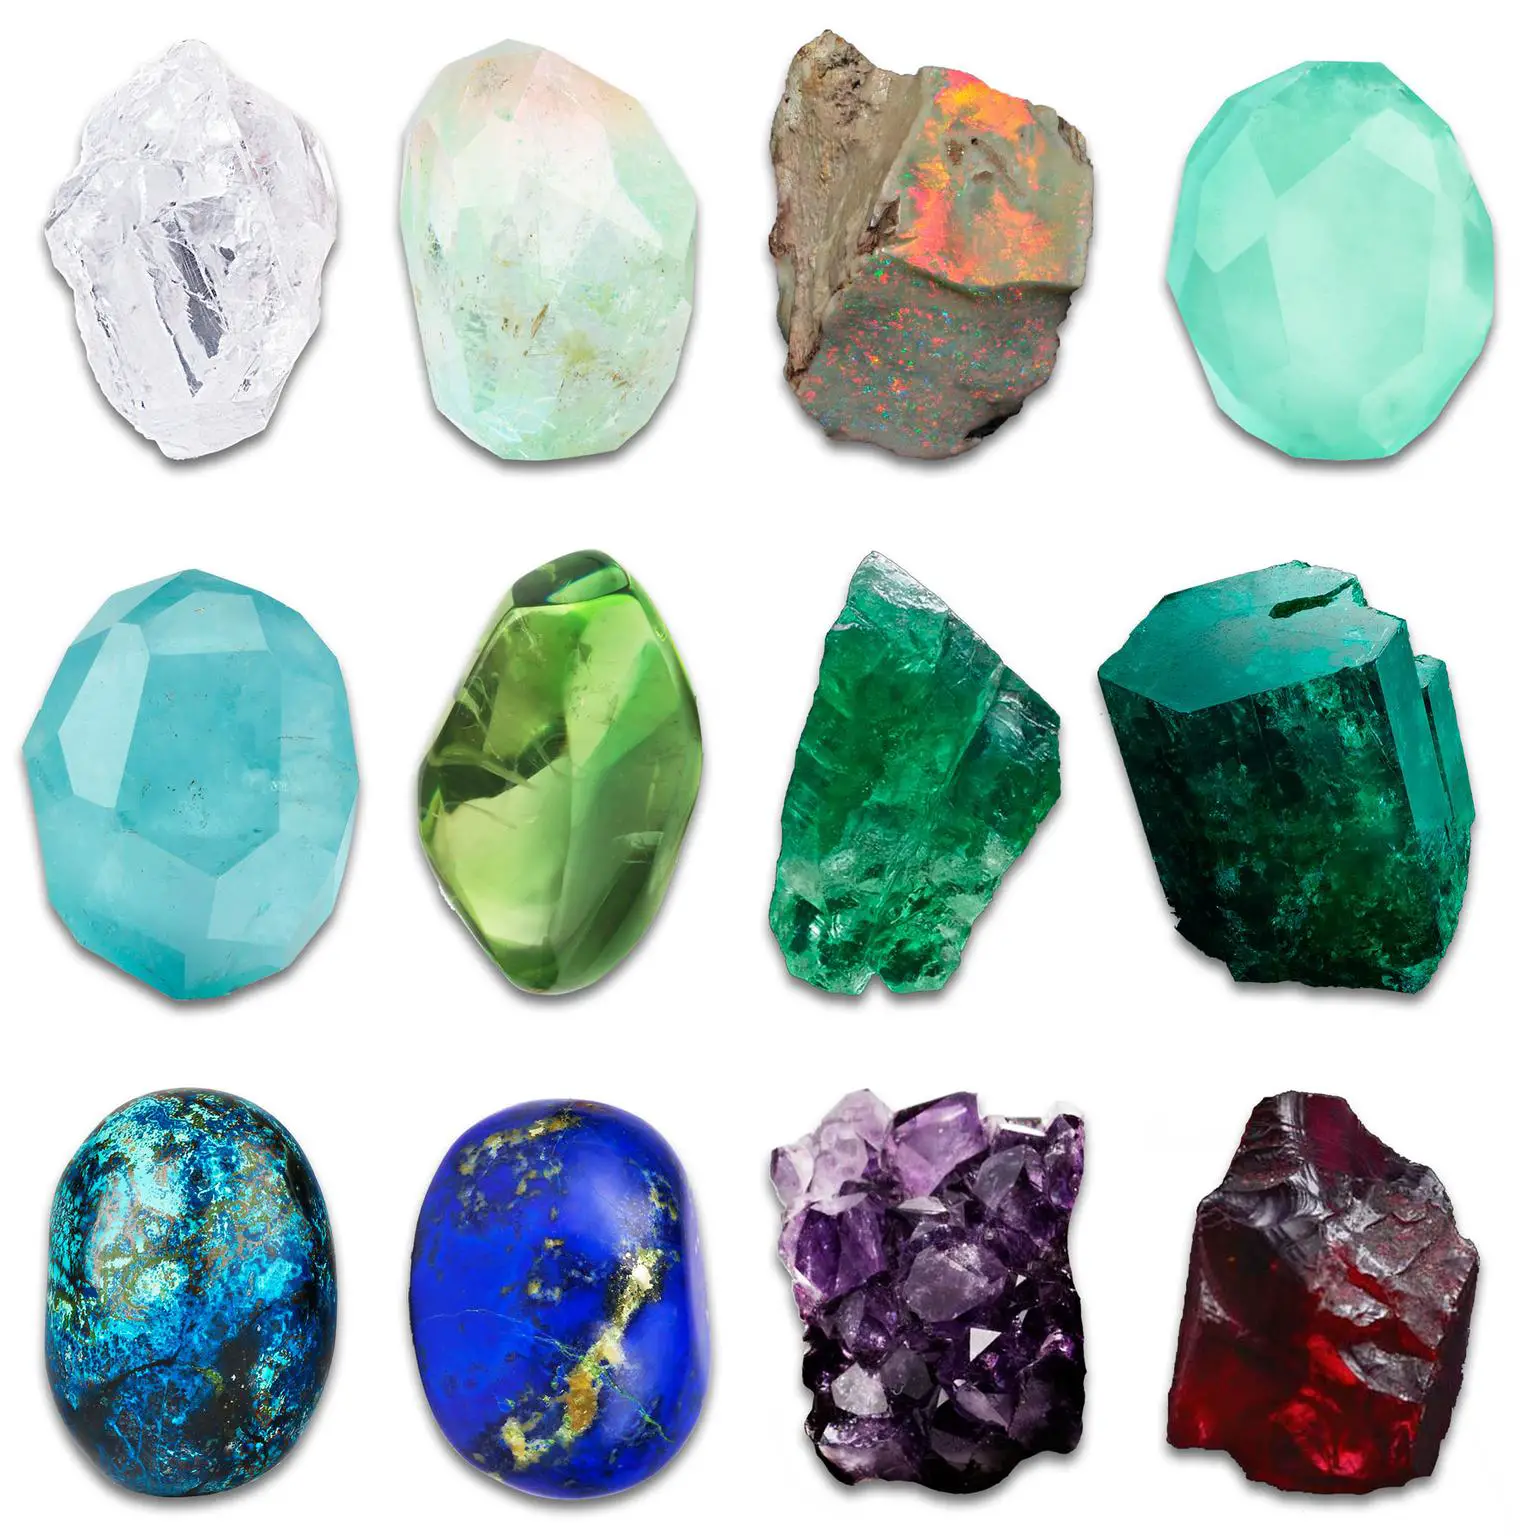 Best Gemstones To Invest In